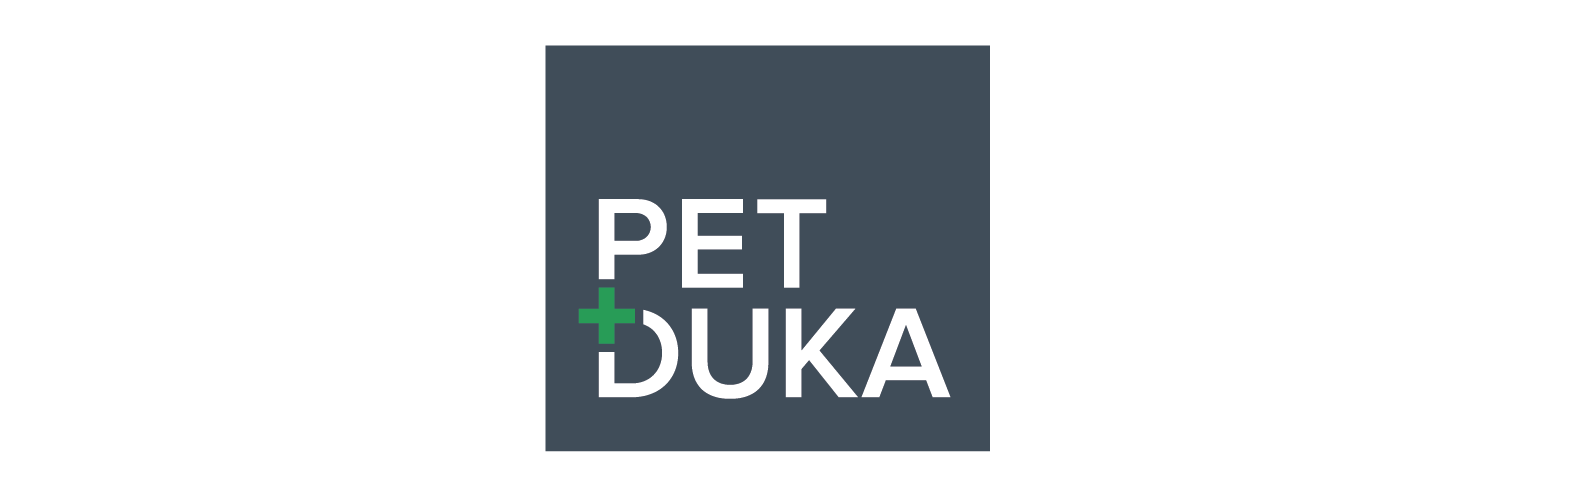 Petduka.nl reviews, beoordelingen en ervaringen